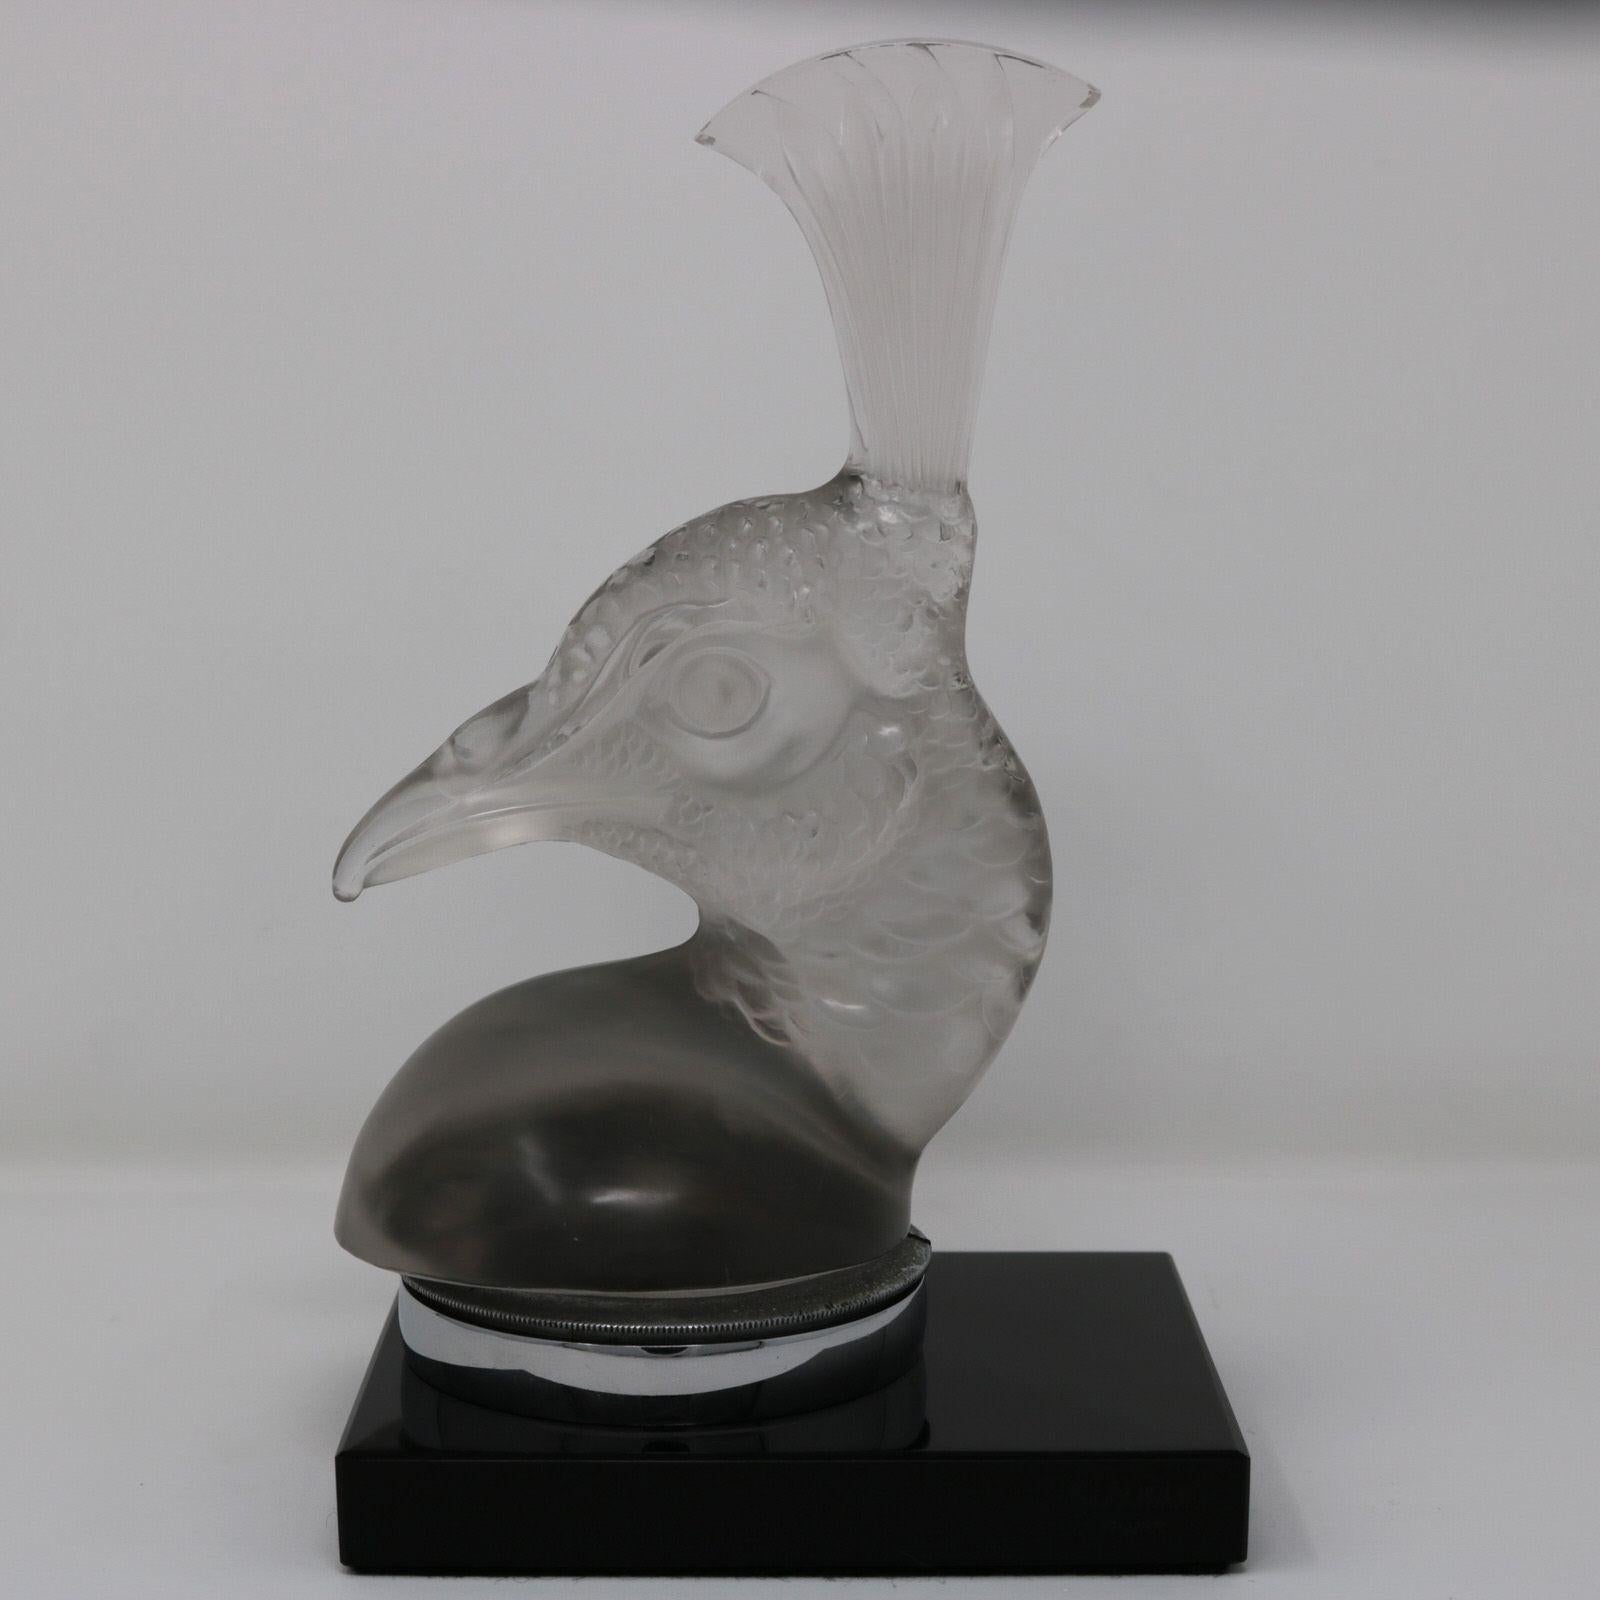 Mascotte de voiture 'Tete De Paon' en verre clair et dépoli de René Lalique. Ce modèle présente la tête d'un paon. L'oiseau est monté sur une base rectangulaire en verre noir. Marque de fabricant moulée sur le bord de la base, 